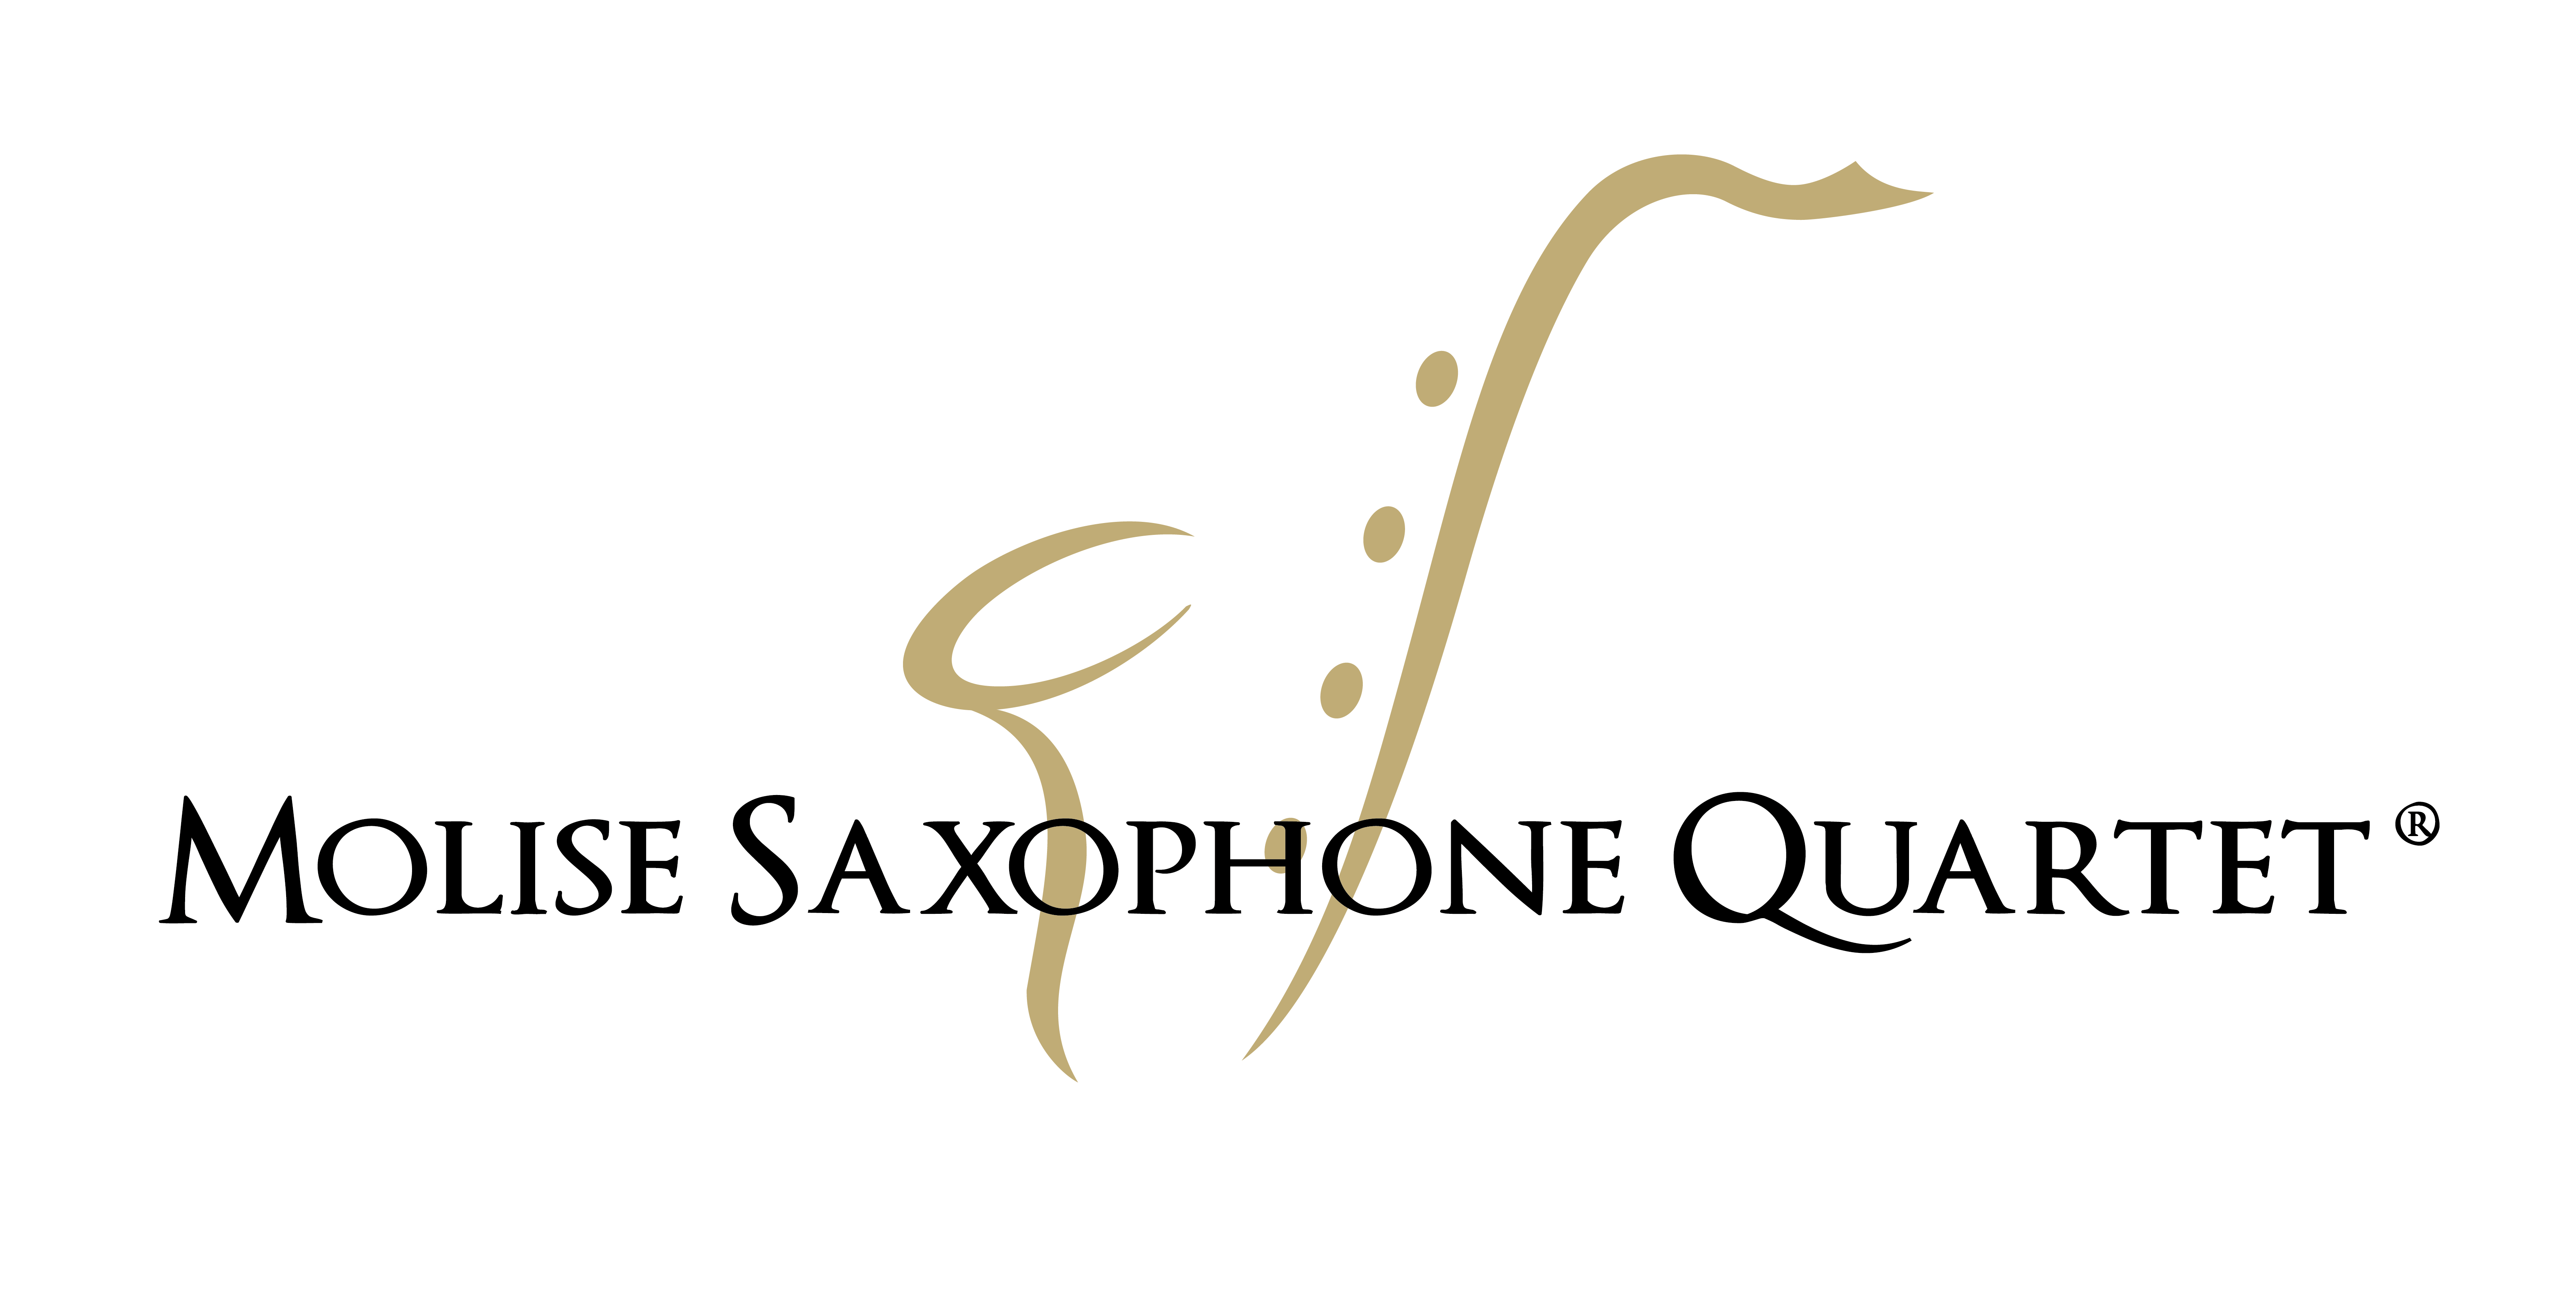 Molise Saxophone quartet